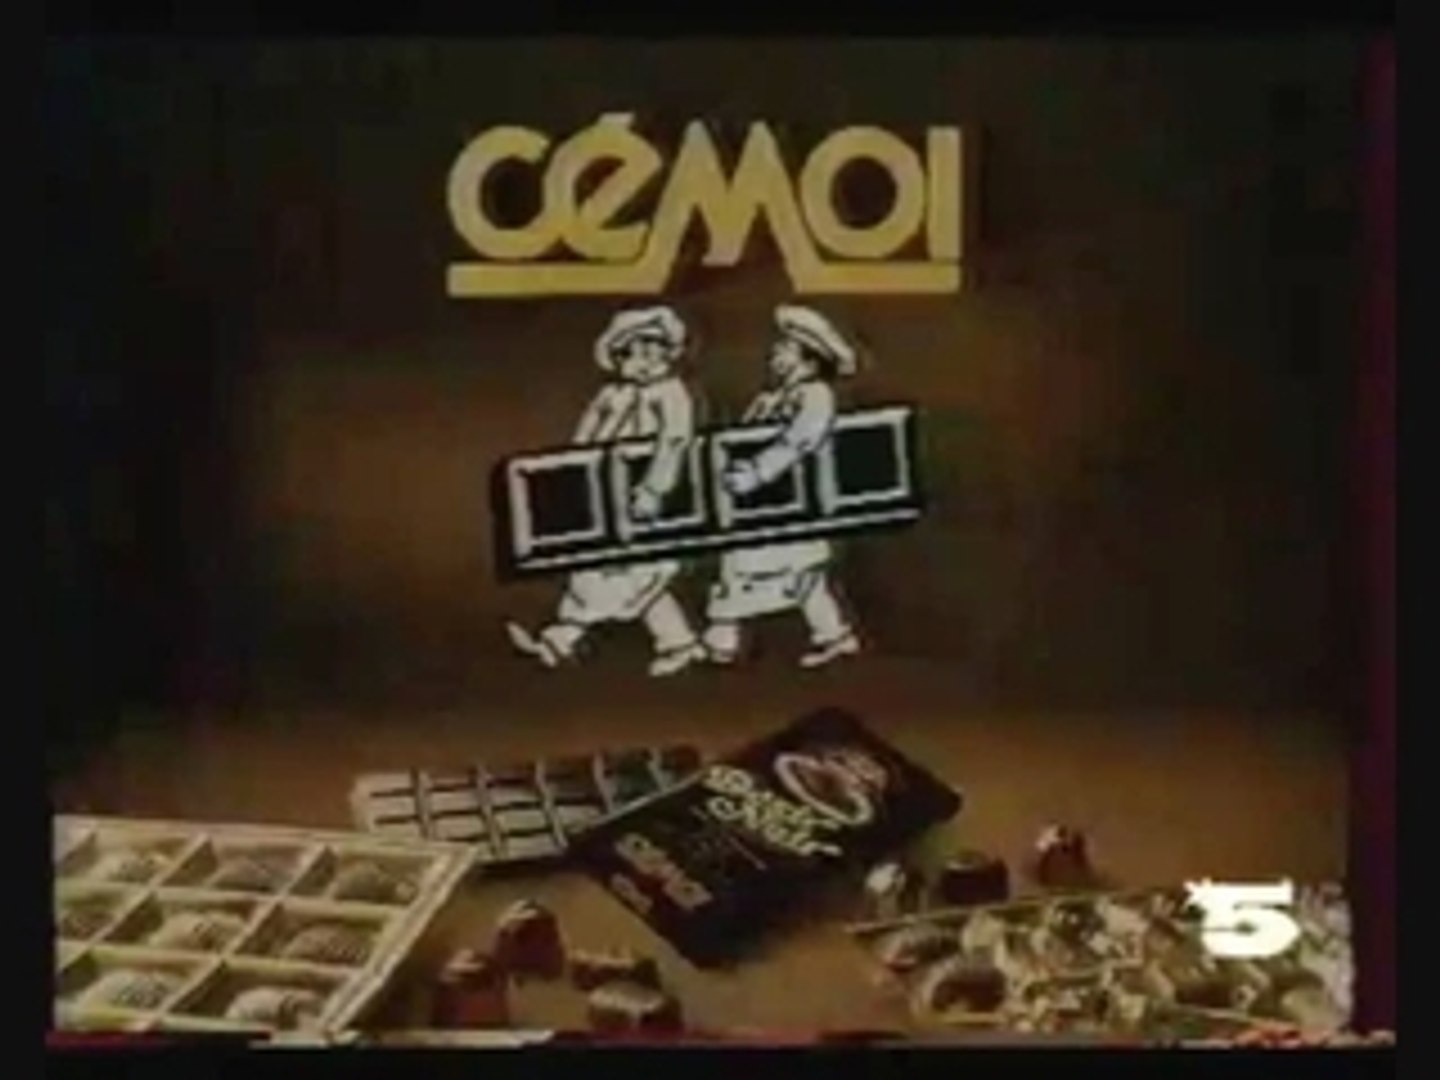 Publicité chocolat Mon Chéri 1993 - Vidéo Dailymotion